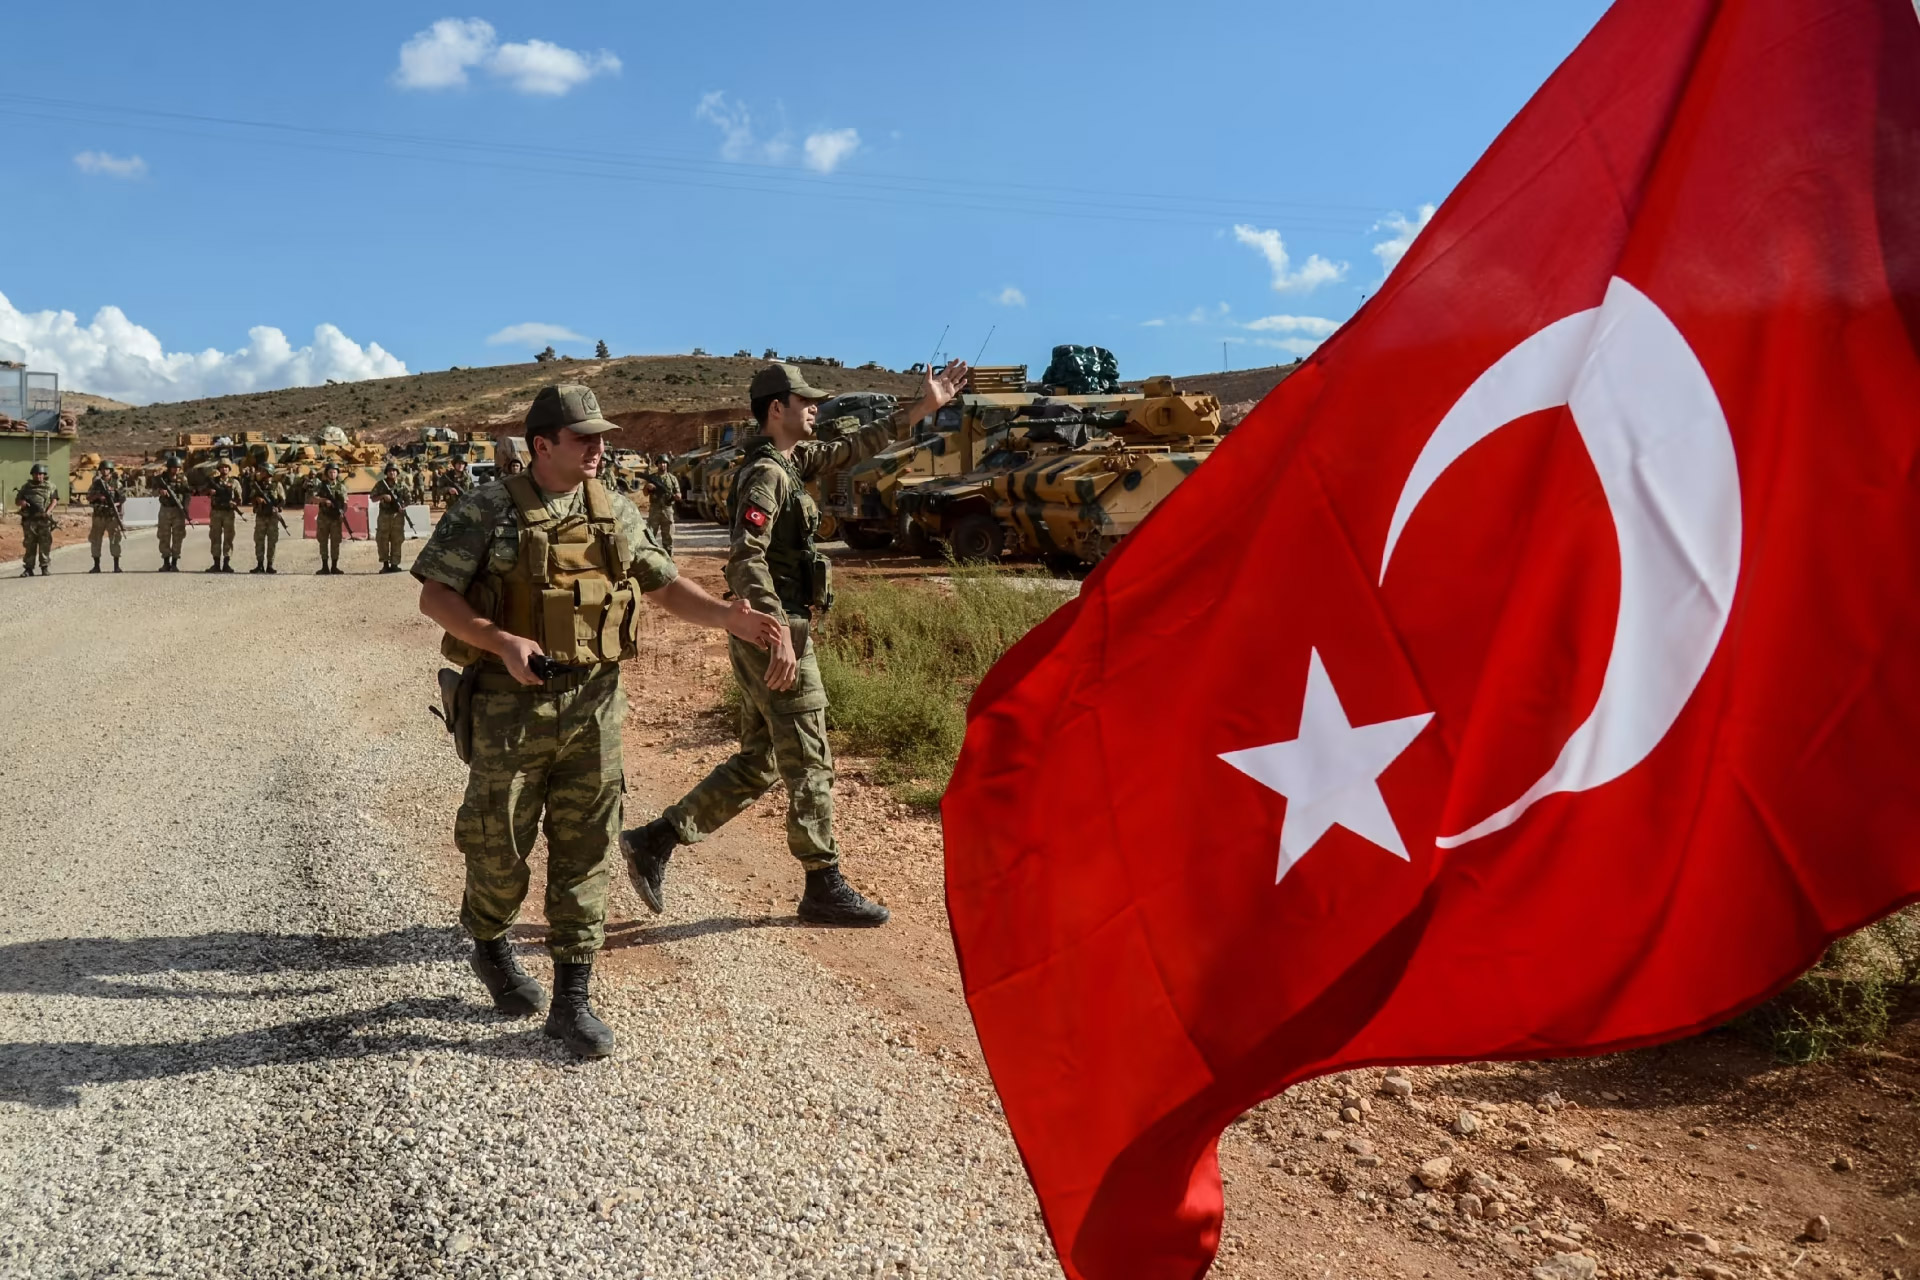 دوافع توجّه تركيا لتوحيد سلطة المجالس المحلية بالشمال السوري